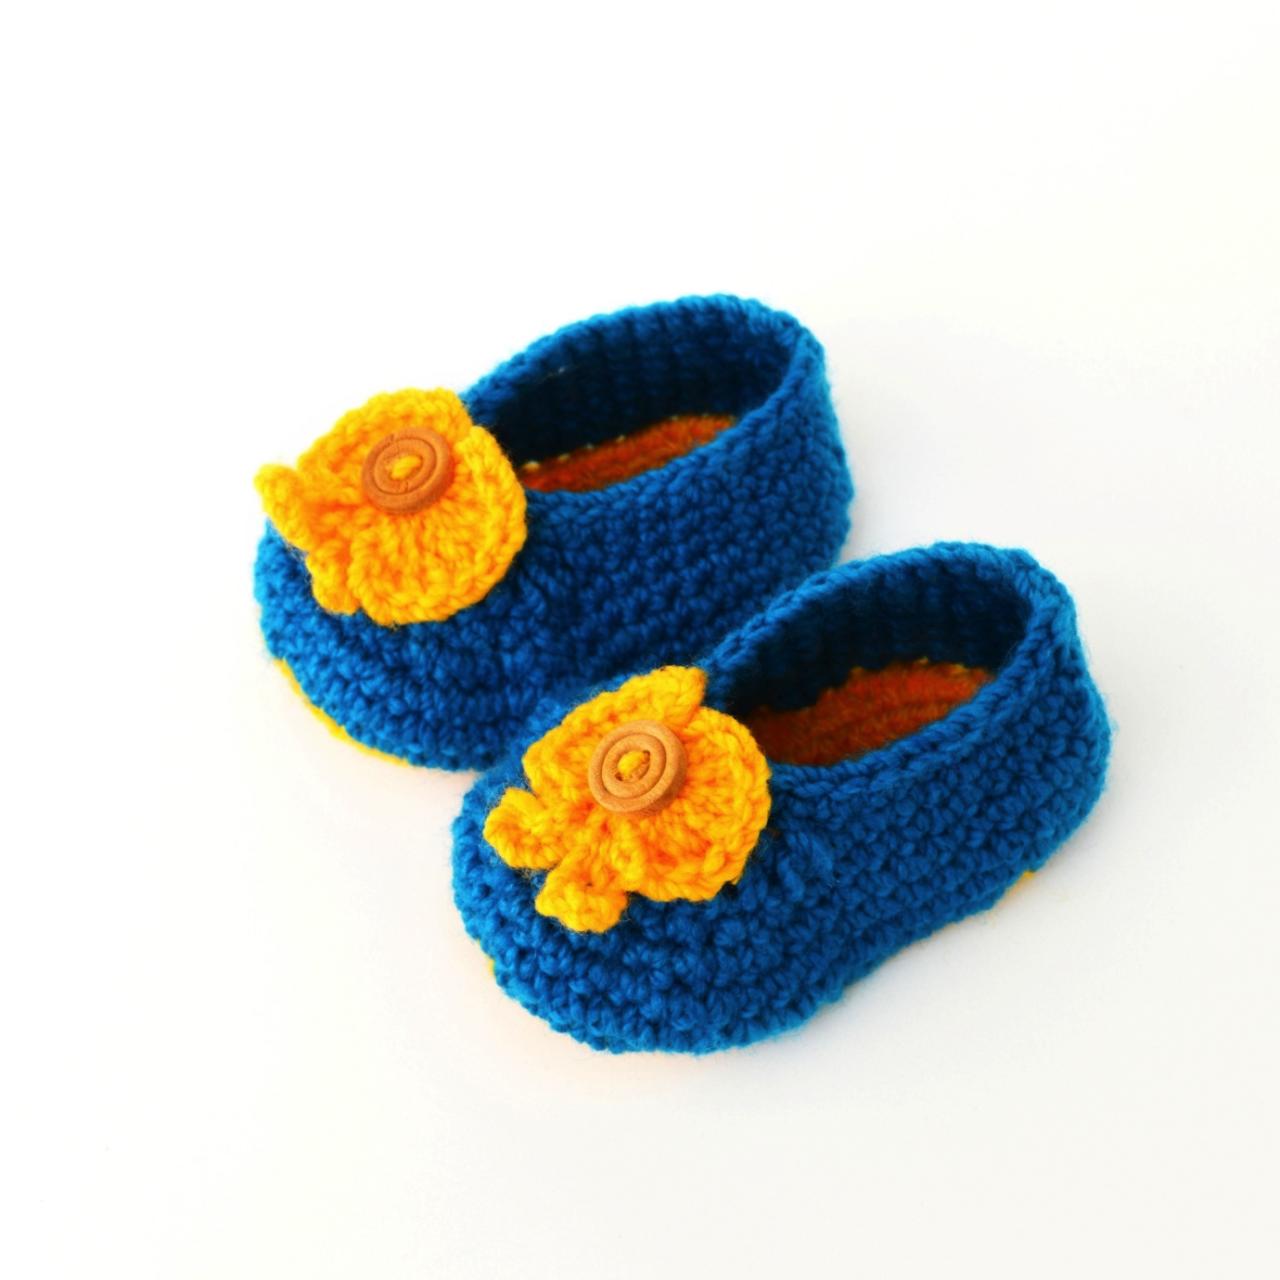 Crochet Baby Booties - Sky Blue